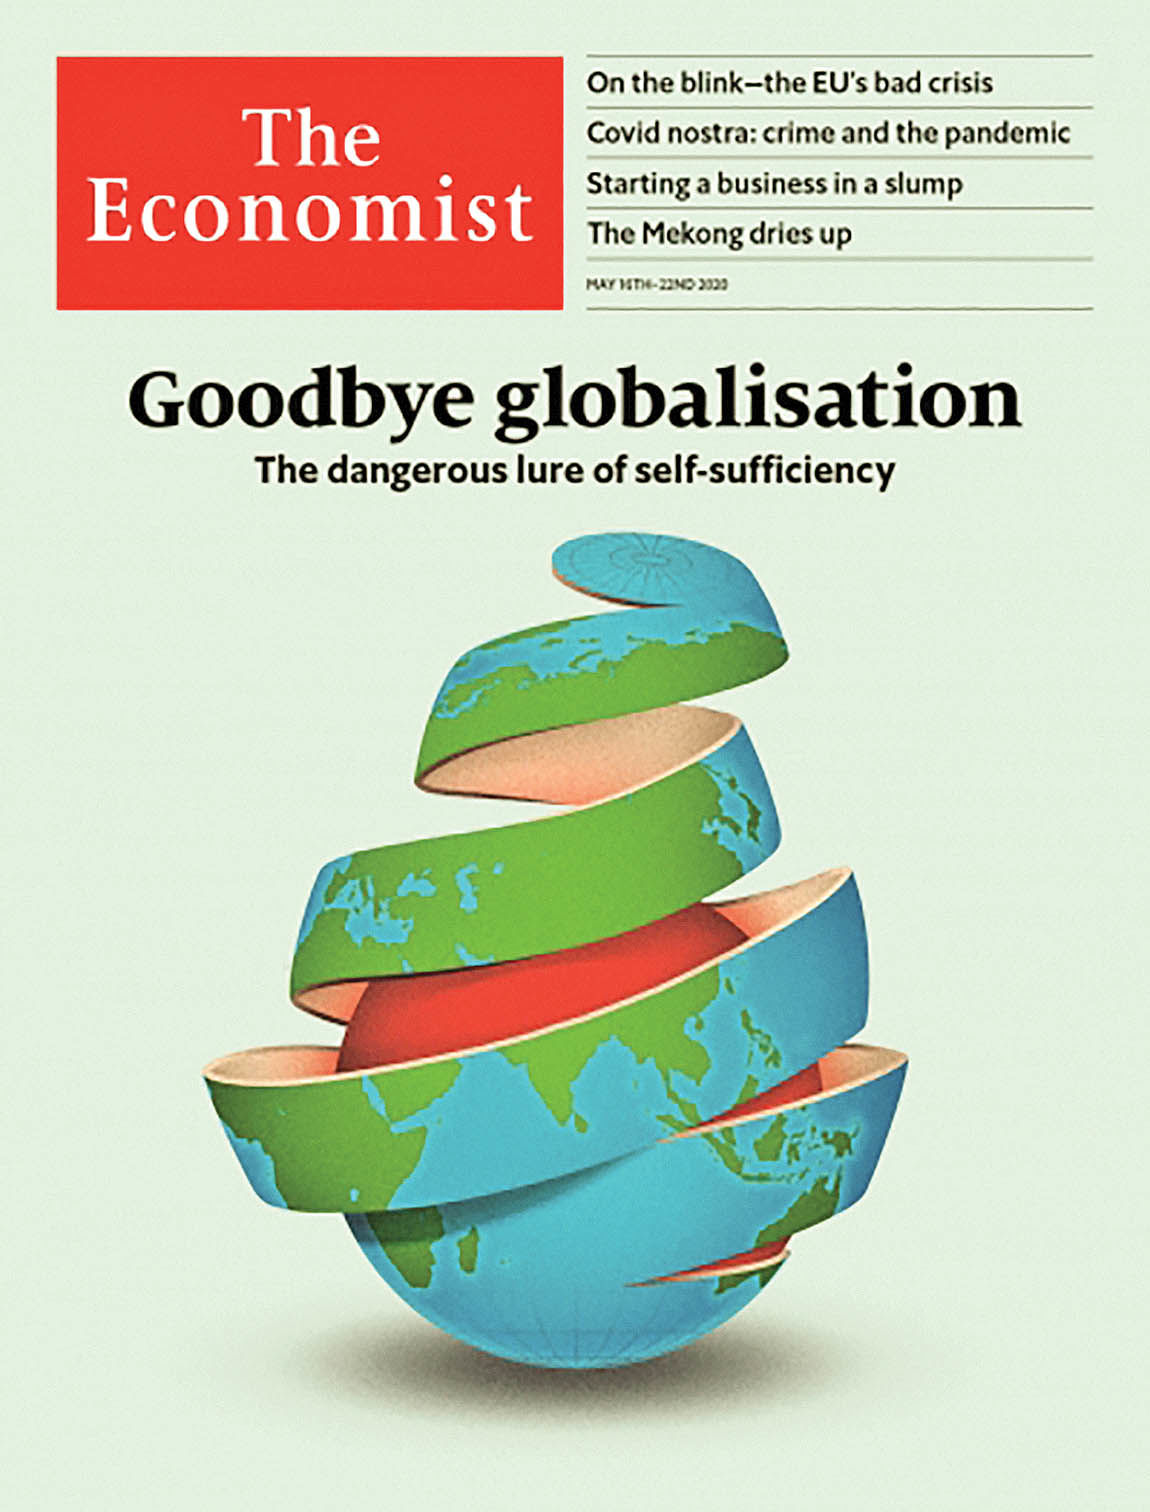 اکونومیست هشدارداد؛ پایان دوران طلایی جهانی شدن
